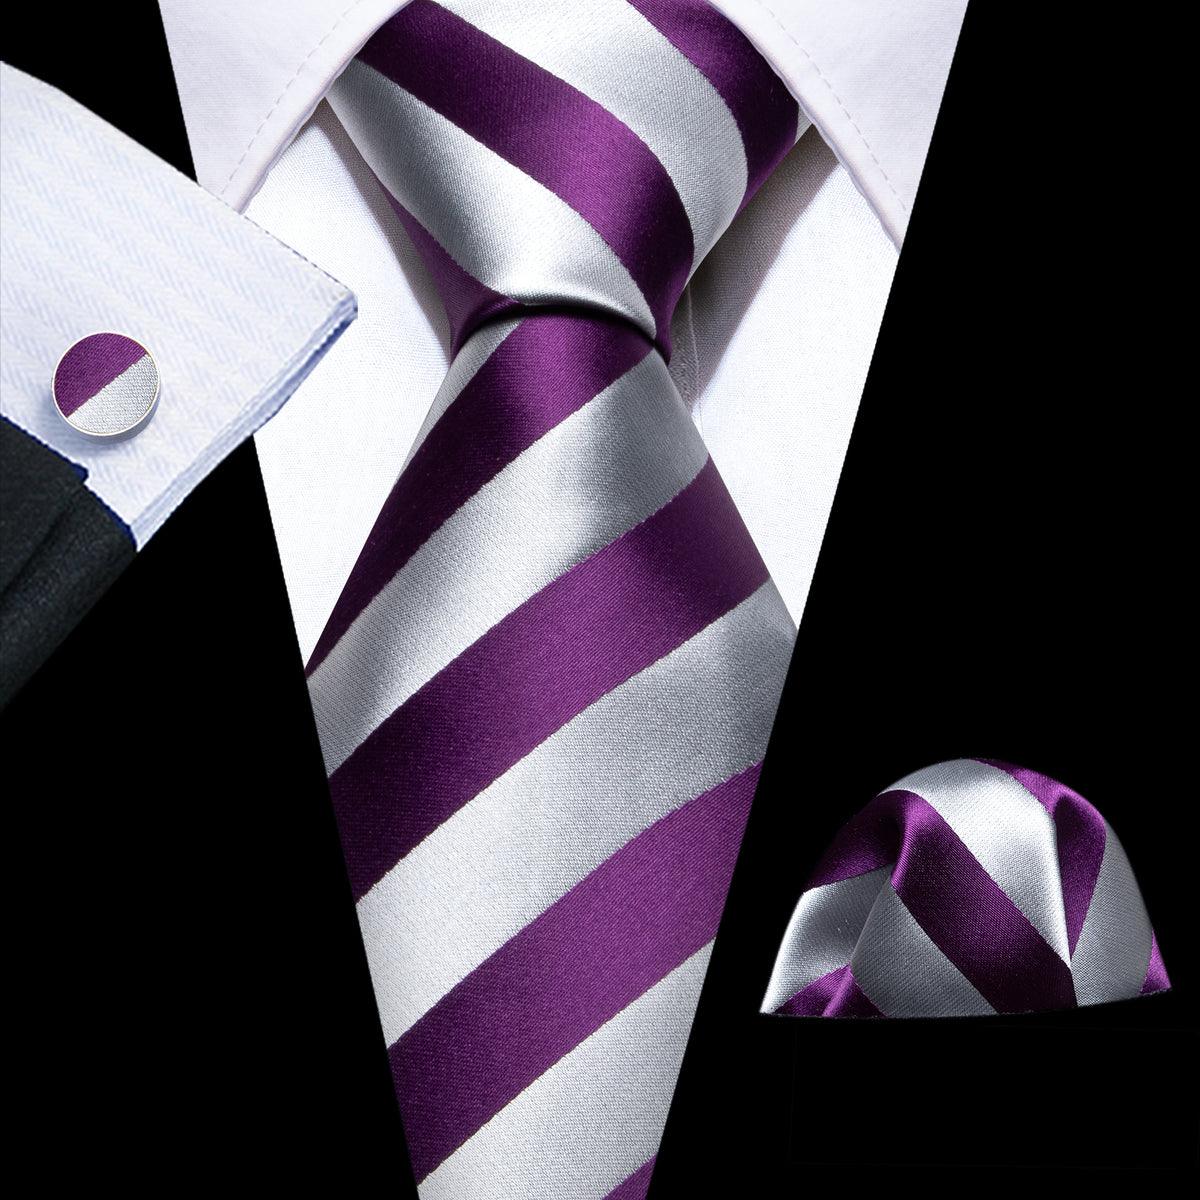 Silver Gray Stripe Silk Tie Pocket Square Cufflink Set - STYLETIE